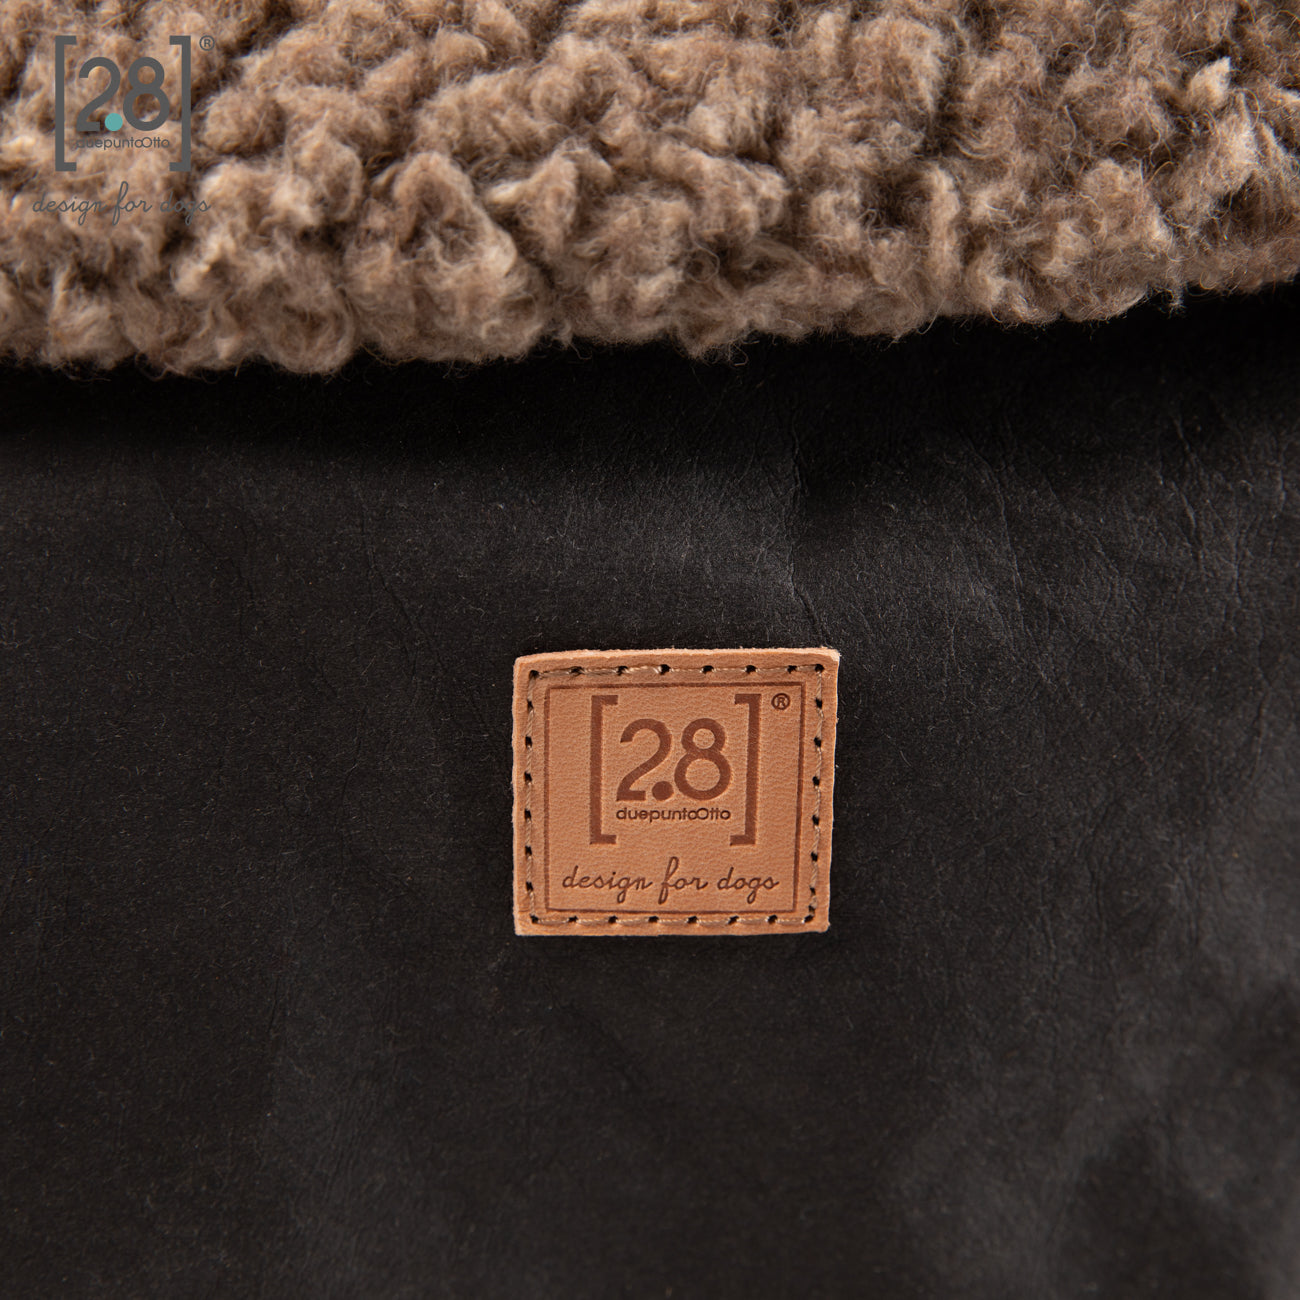 2.8 duepuntootto ANNIE Wax Paper Dog Bag Black Boucle Wool hochwertige Hundereisetasche